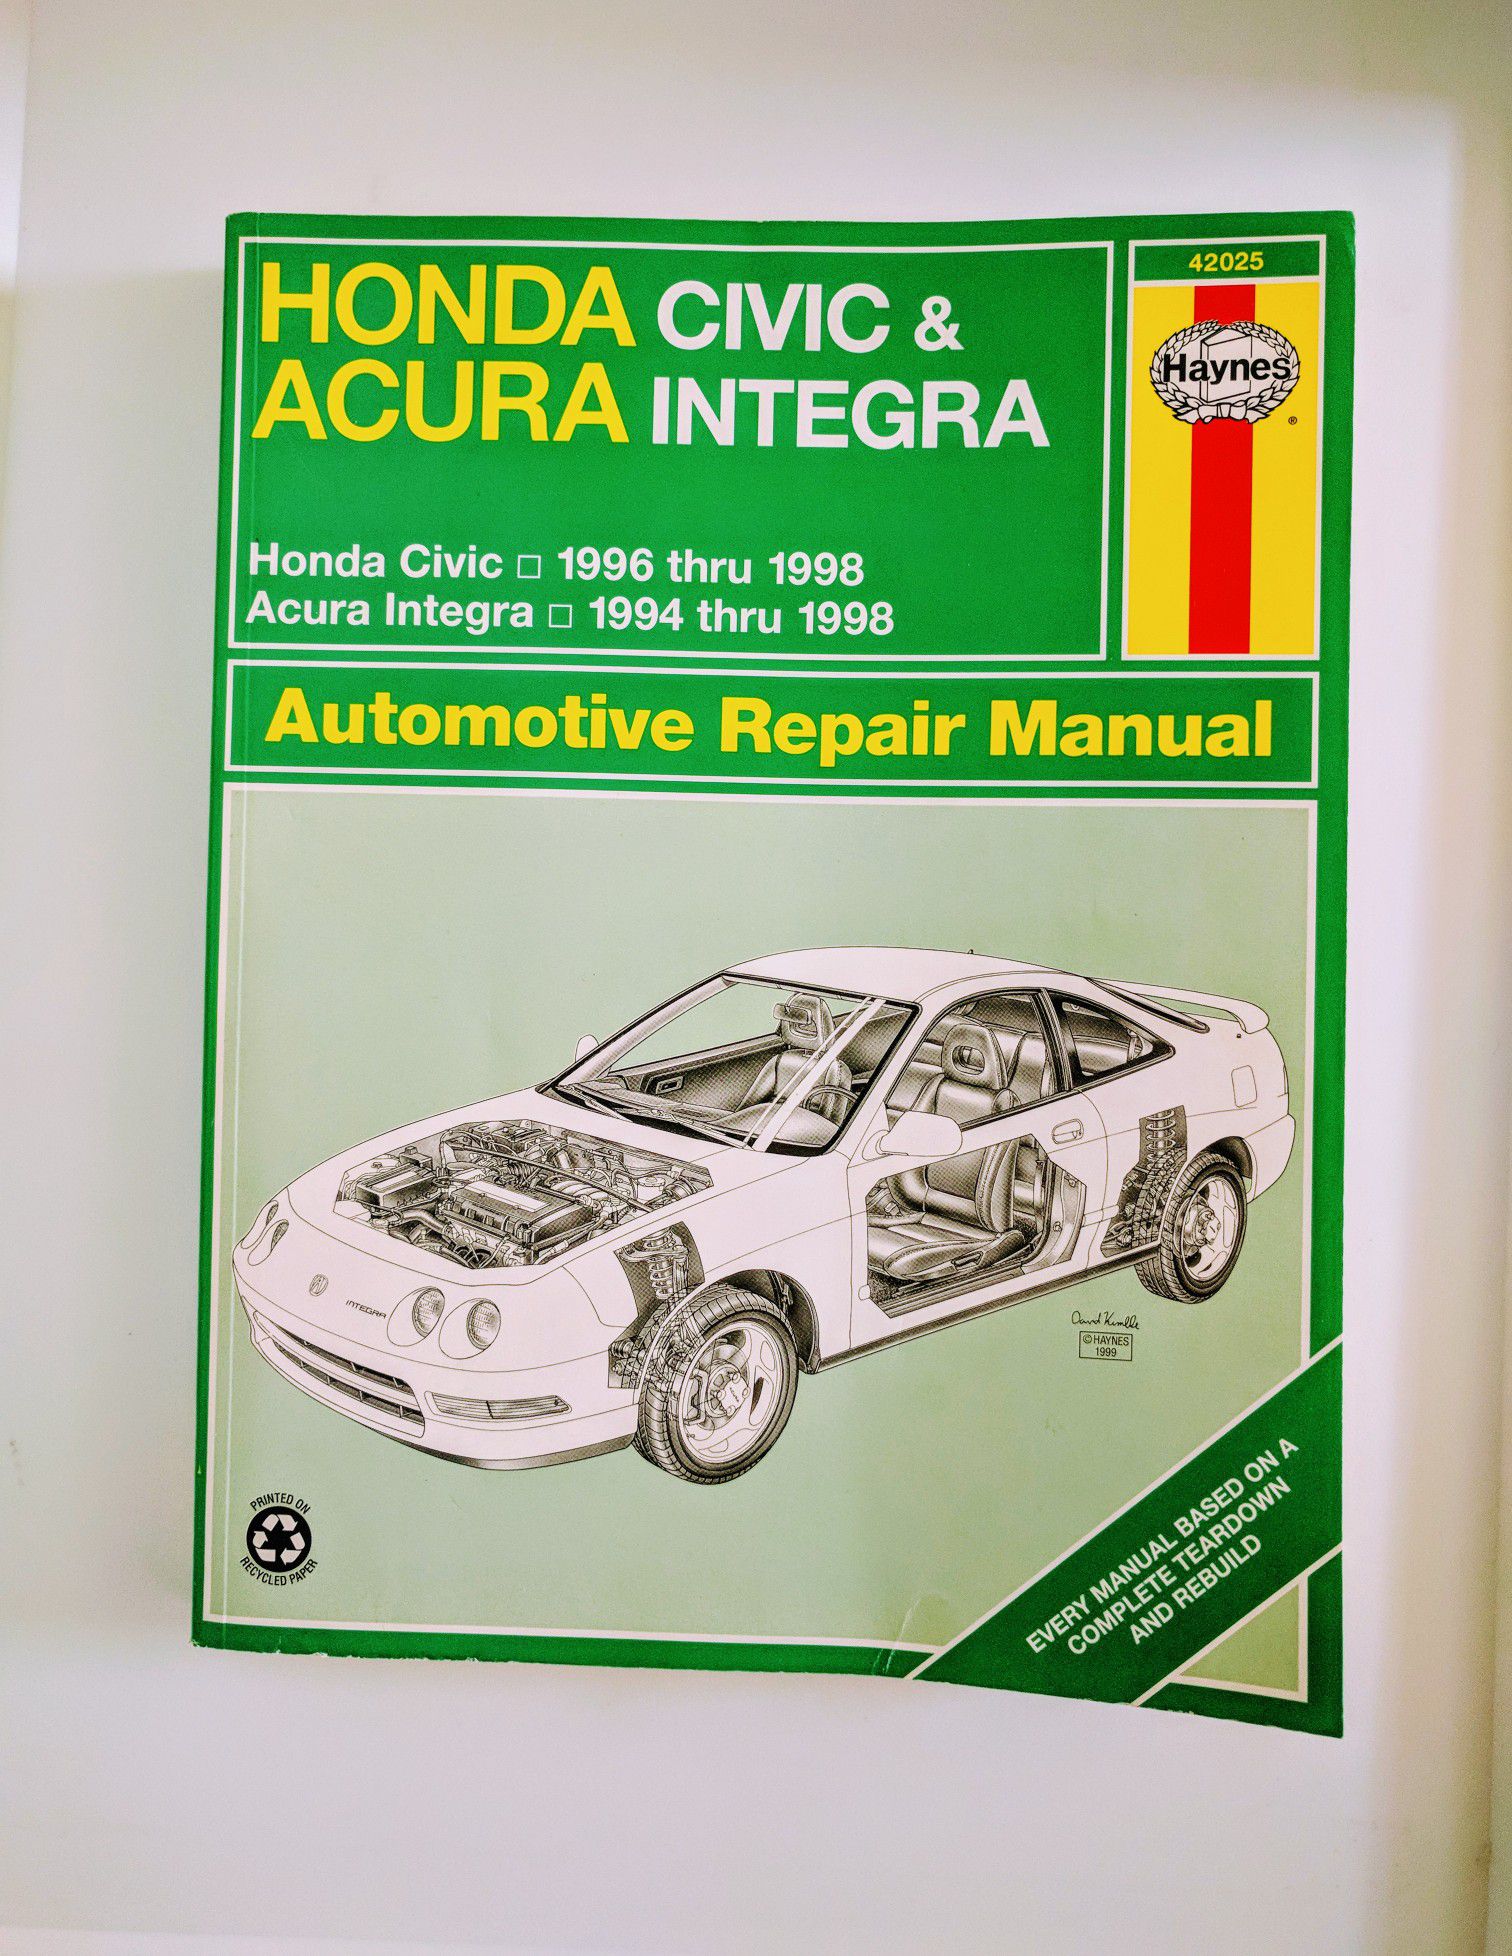 Honda Civic & Acura Integra Automotive Repair Manual